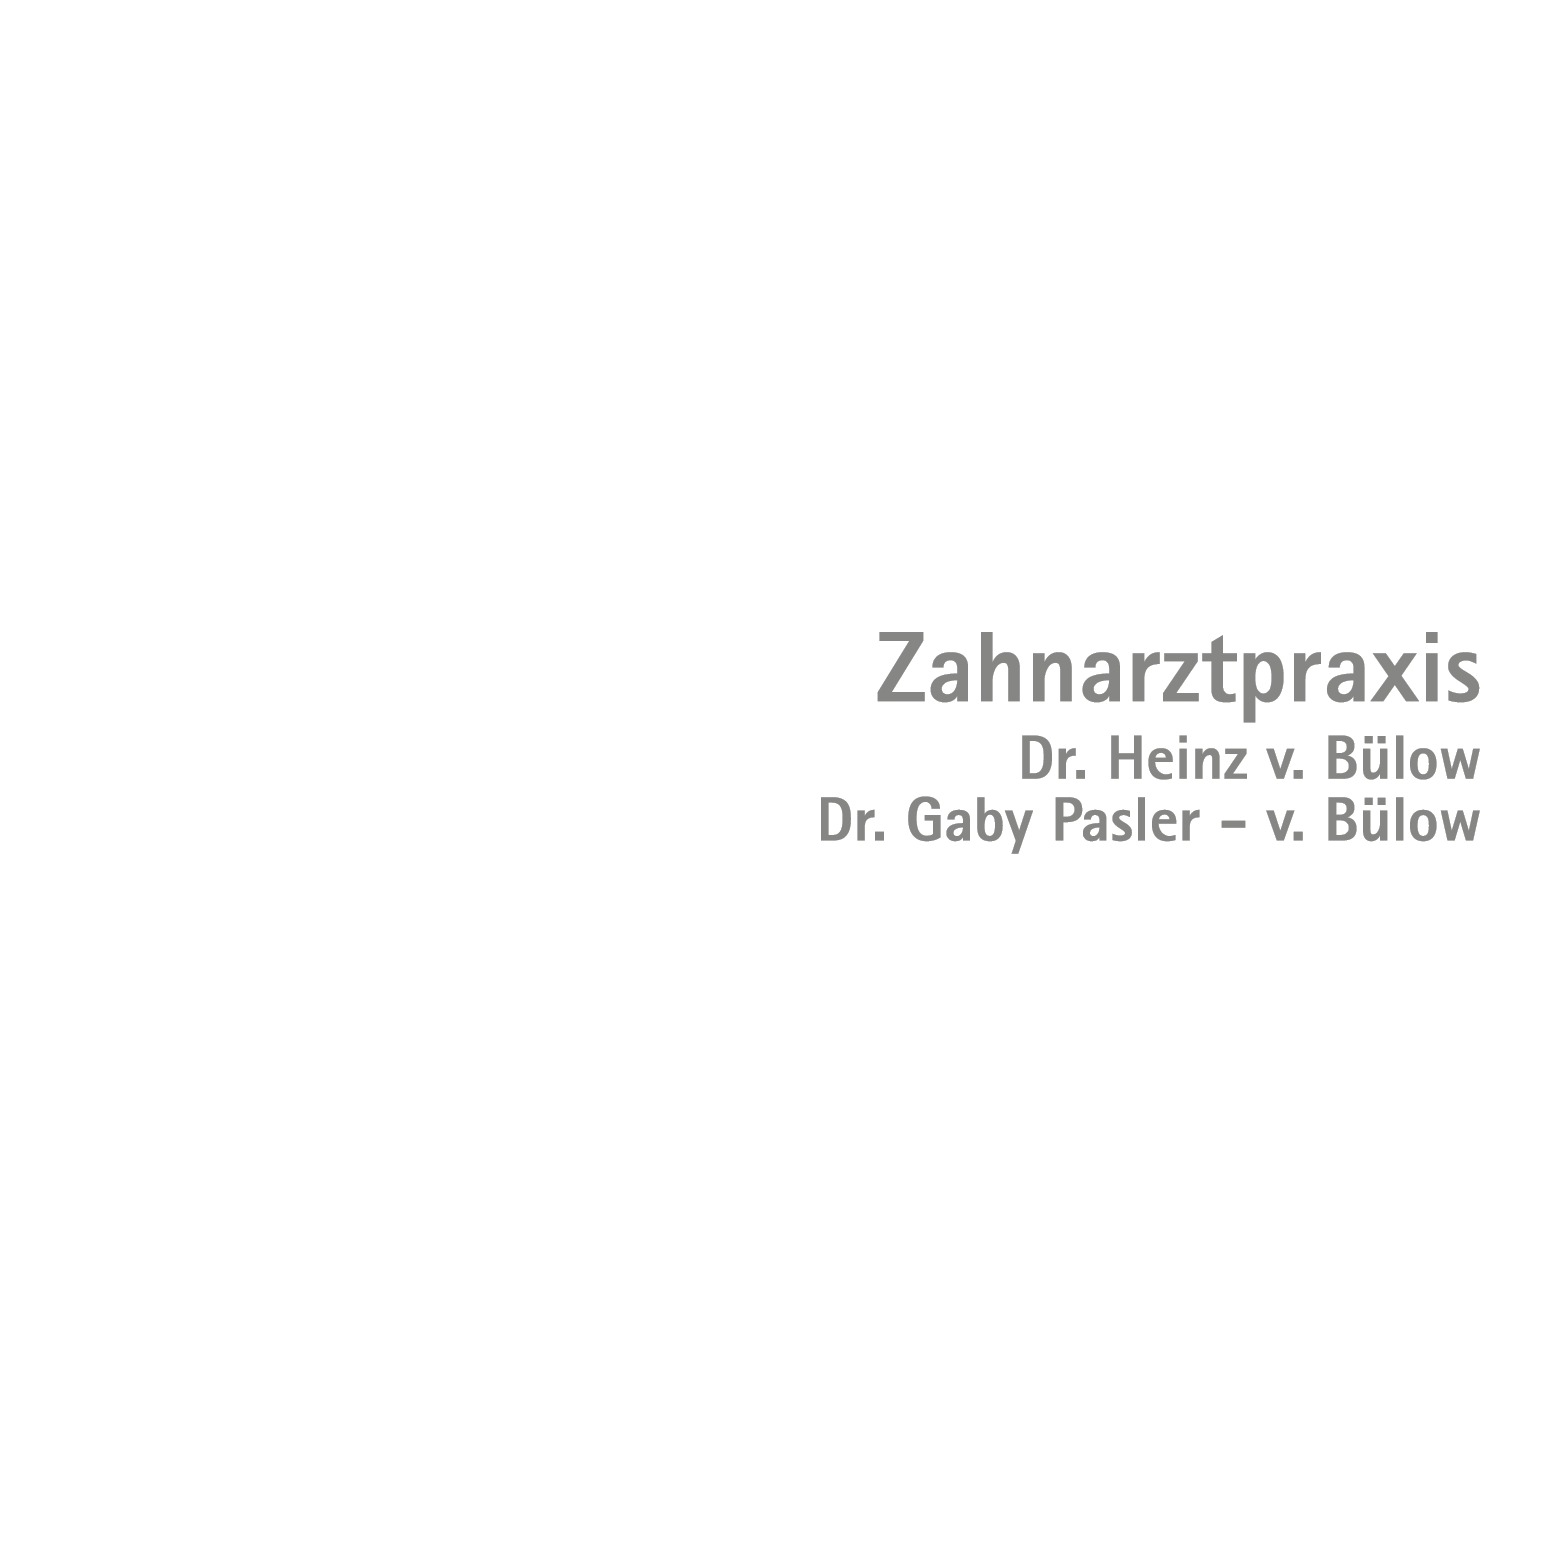 Zahnarztpraxis Dres. Heinz v. Bülow Dr. Gaby Pasler-von Bülow in Mainz Logo